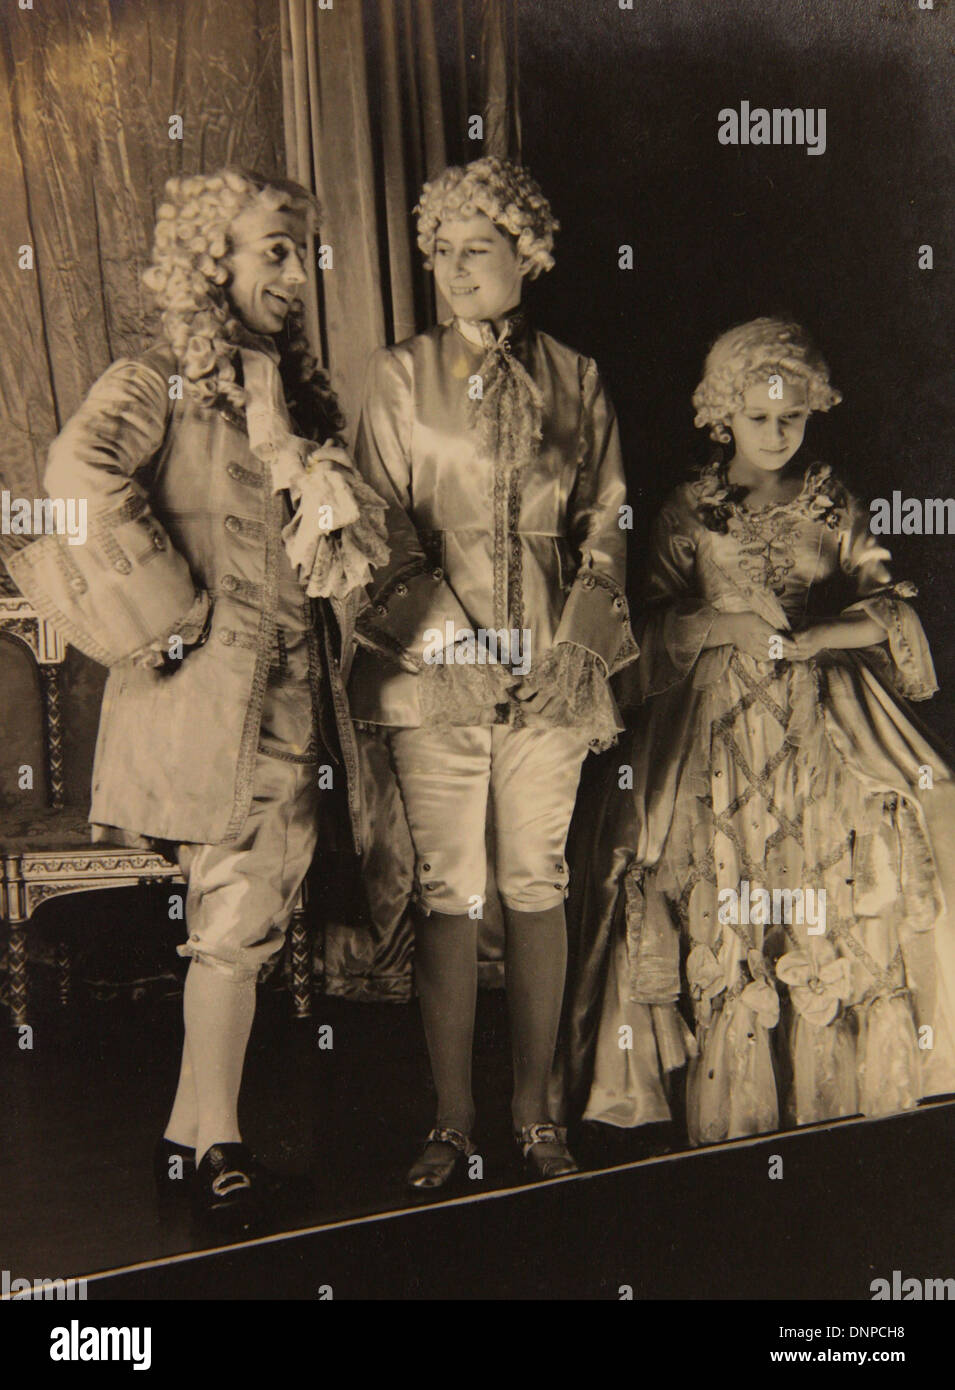 Une photographie de la princesse Margaret (à droite) et de la princesse Elizabeth (milieu) dans le jeu Aladdin, 1943 Banque D'Images